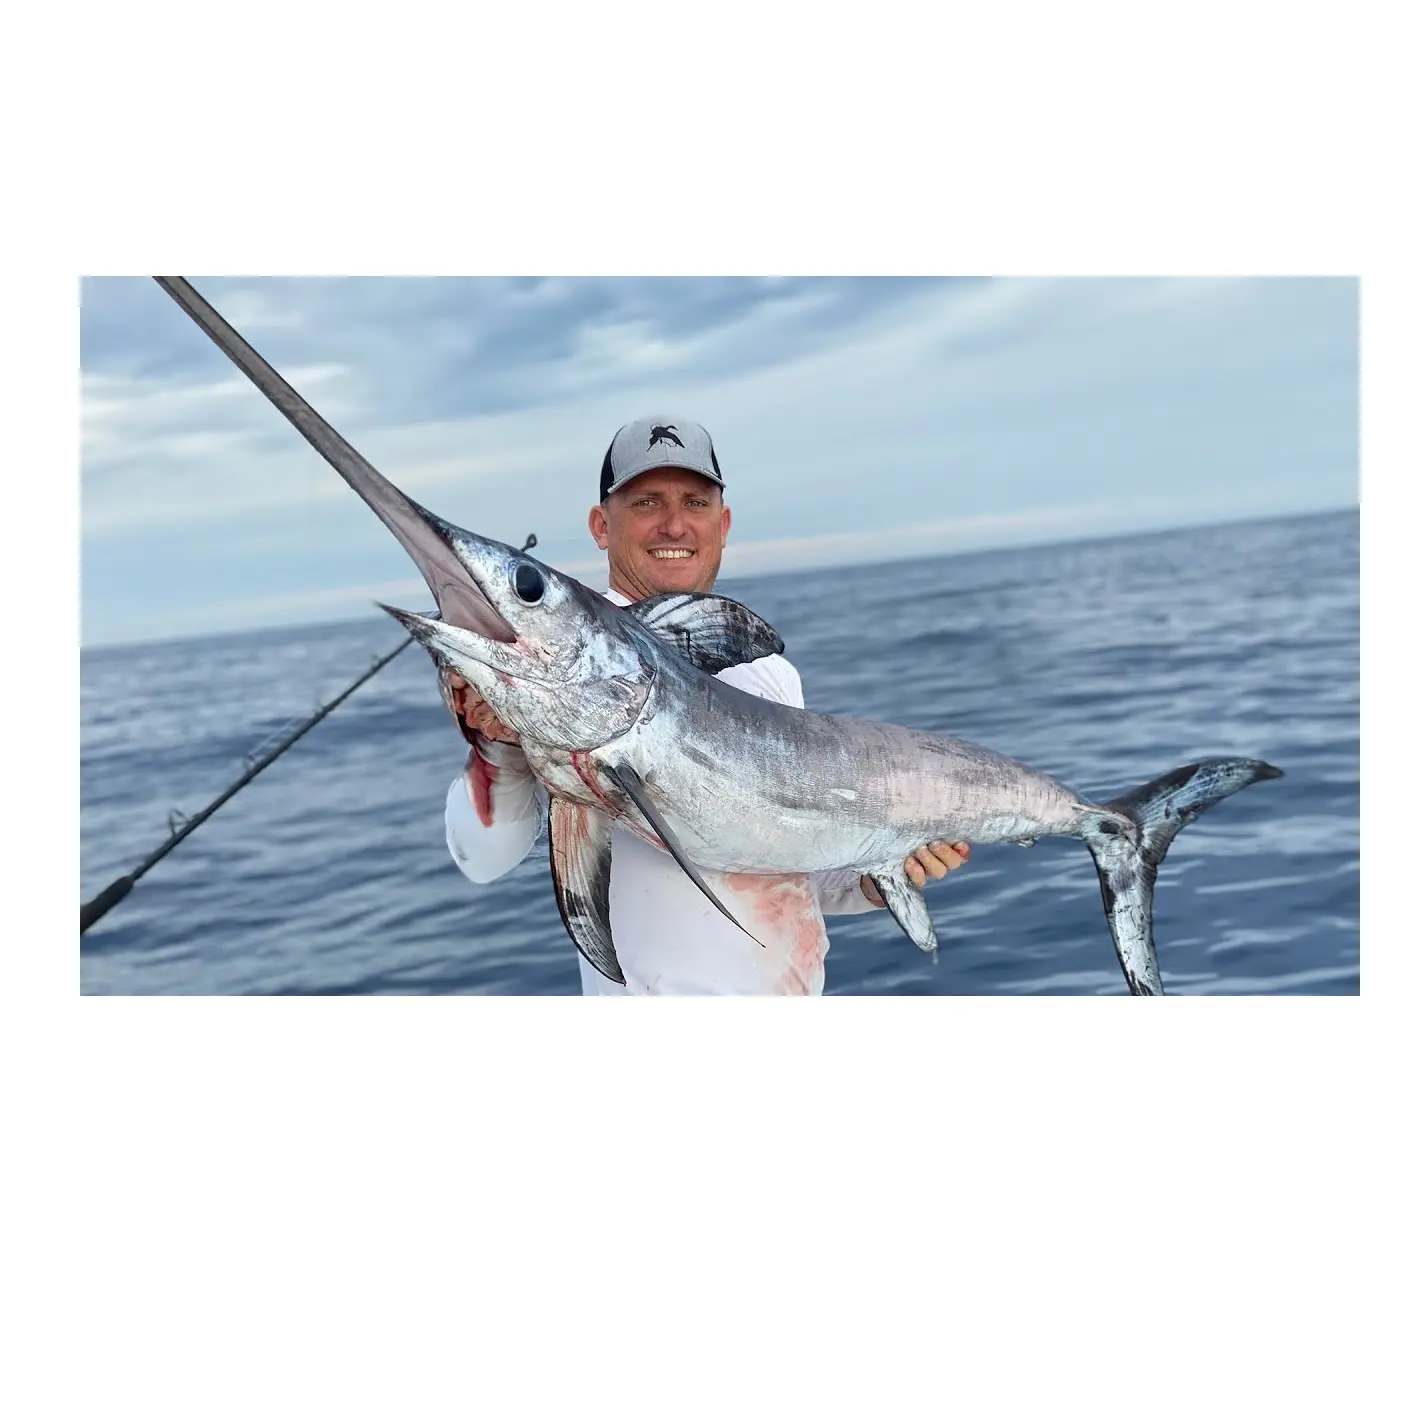 Prezzo più basso HGT Frozen Sword Frozen Marlin pesce vela liscia pelle olio pesce premio di qualità alla rinfusa quantità per le esportazioni